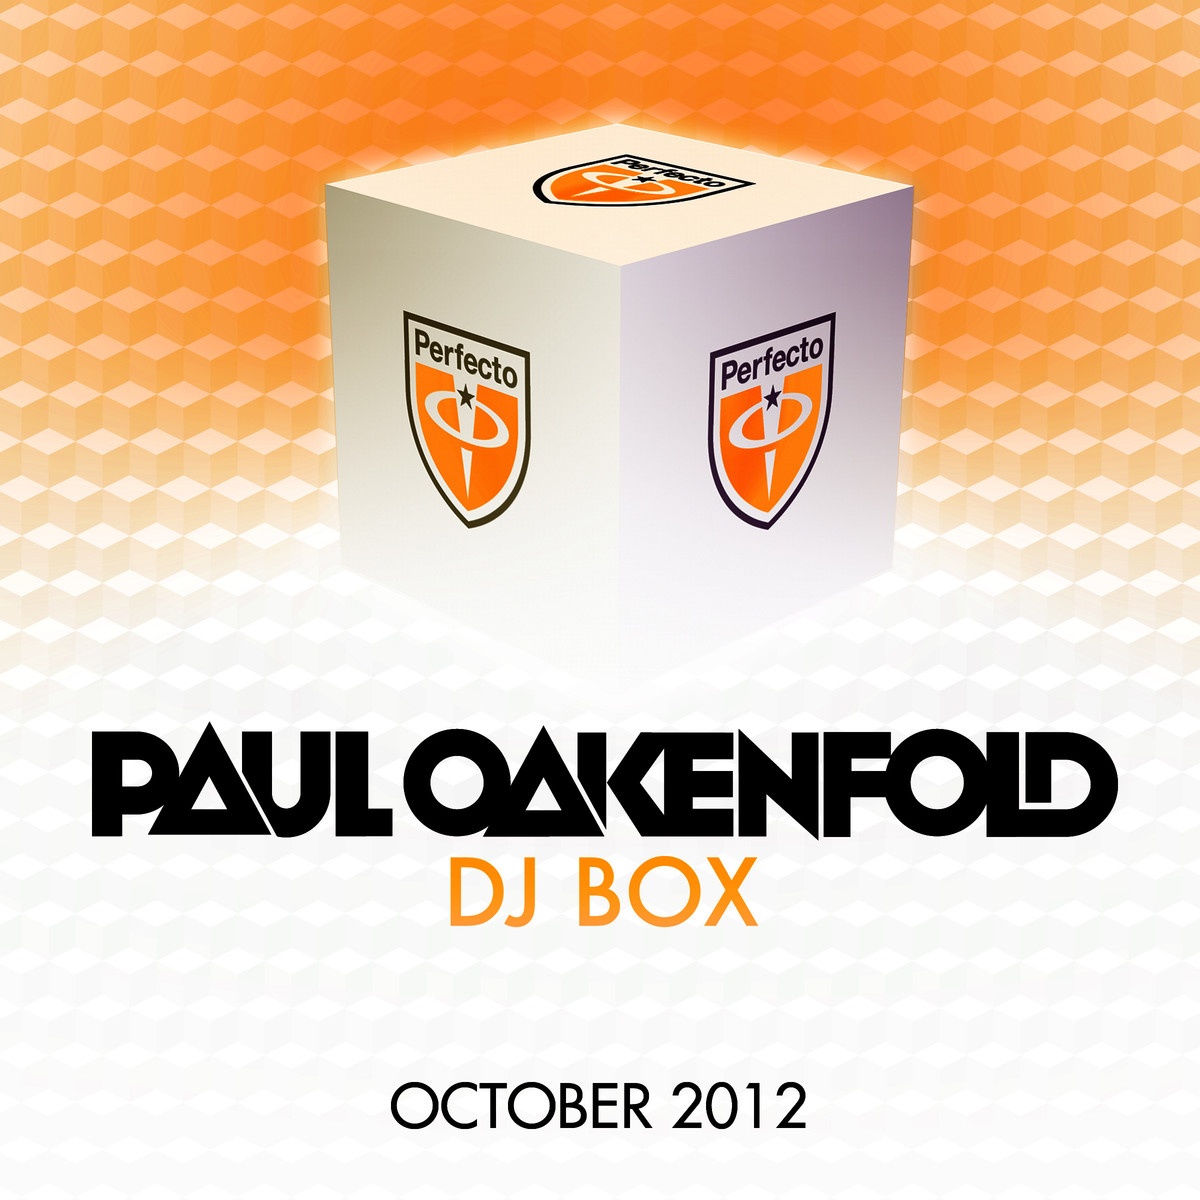 Please Me - Paul Oakenfold Remix